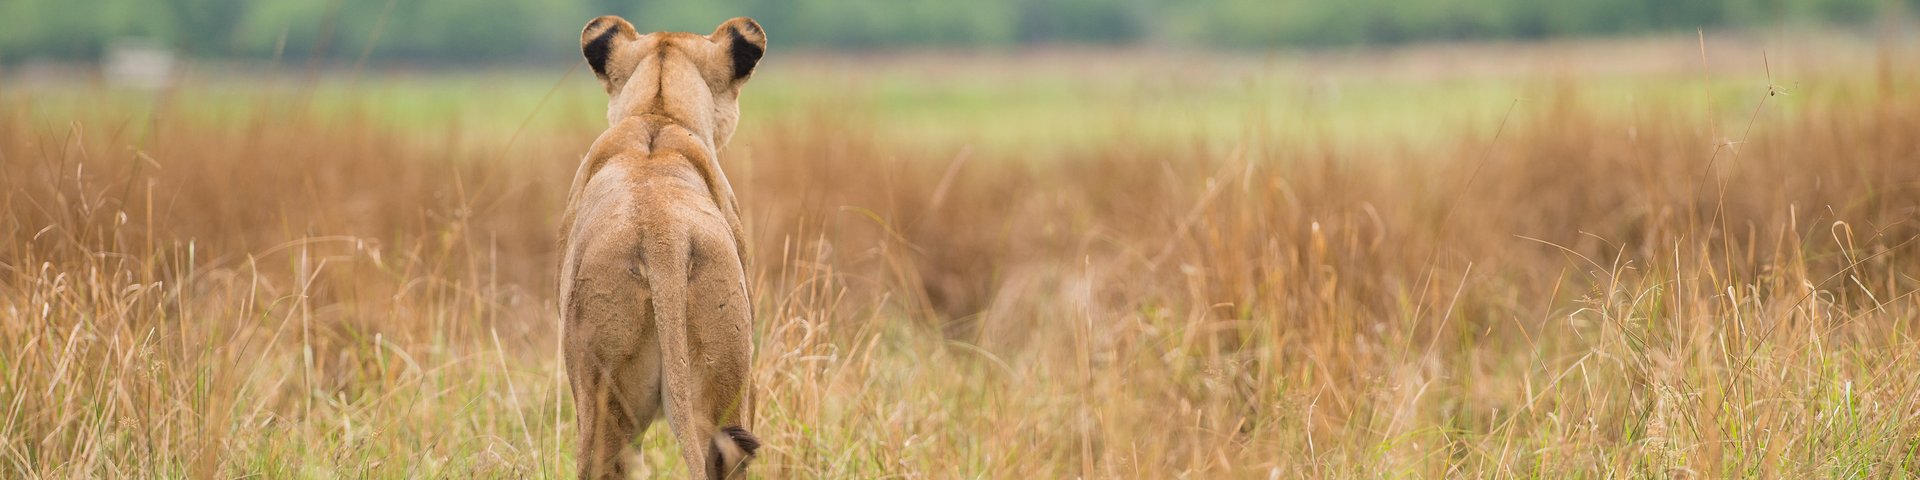 Löwe beobachtet die Umgebung in Botswana